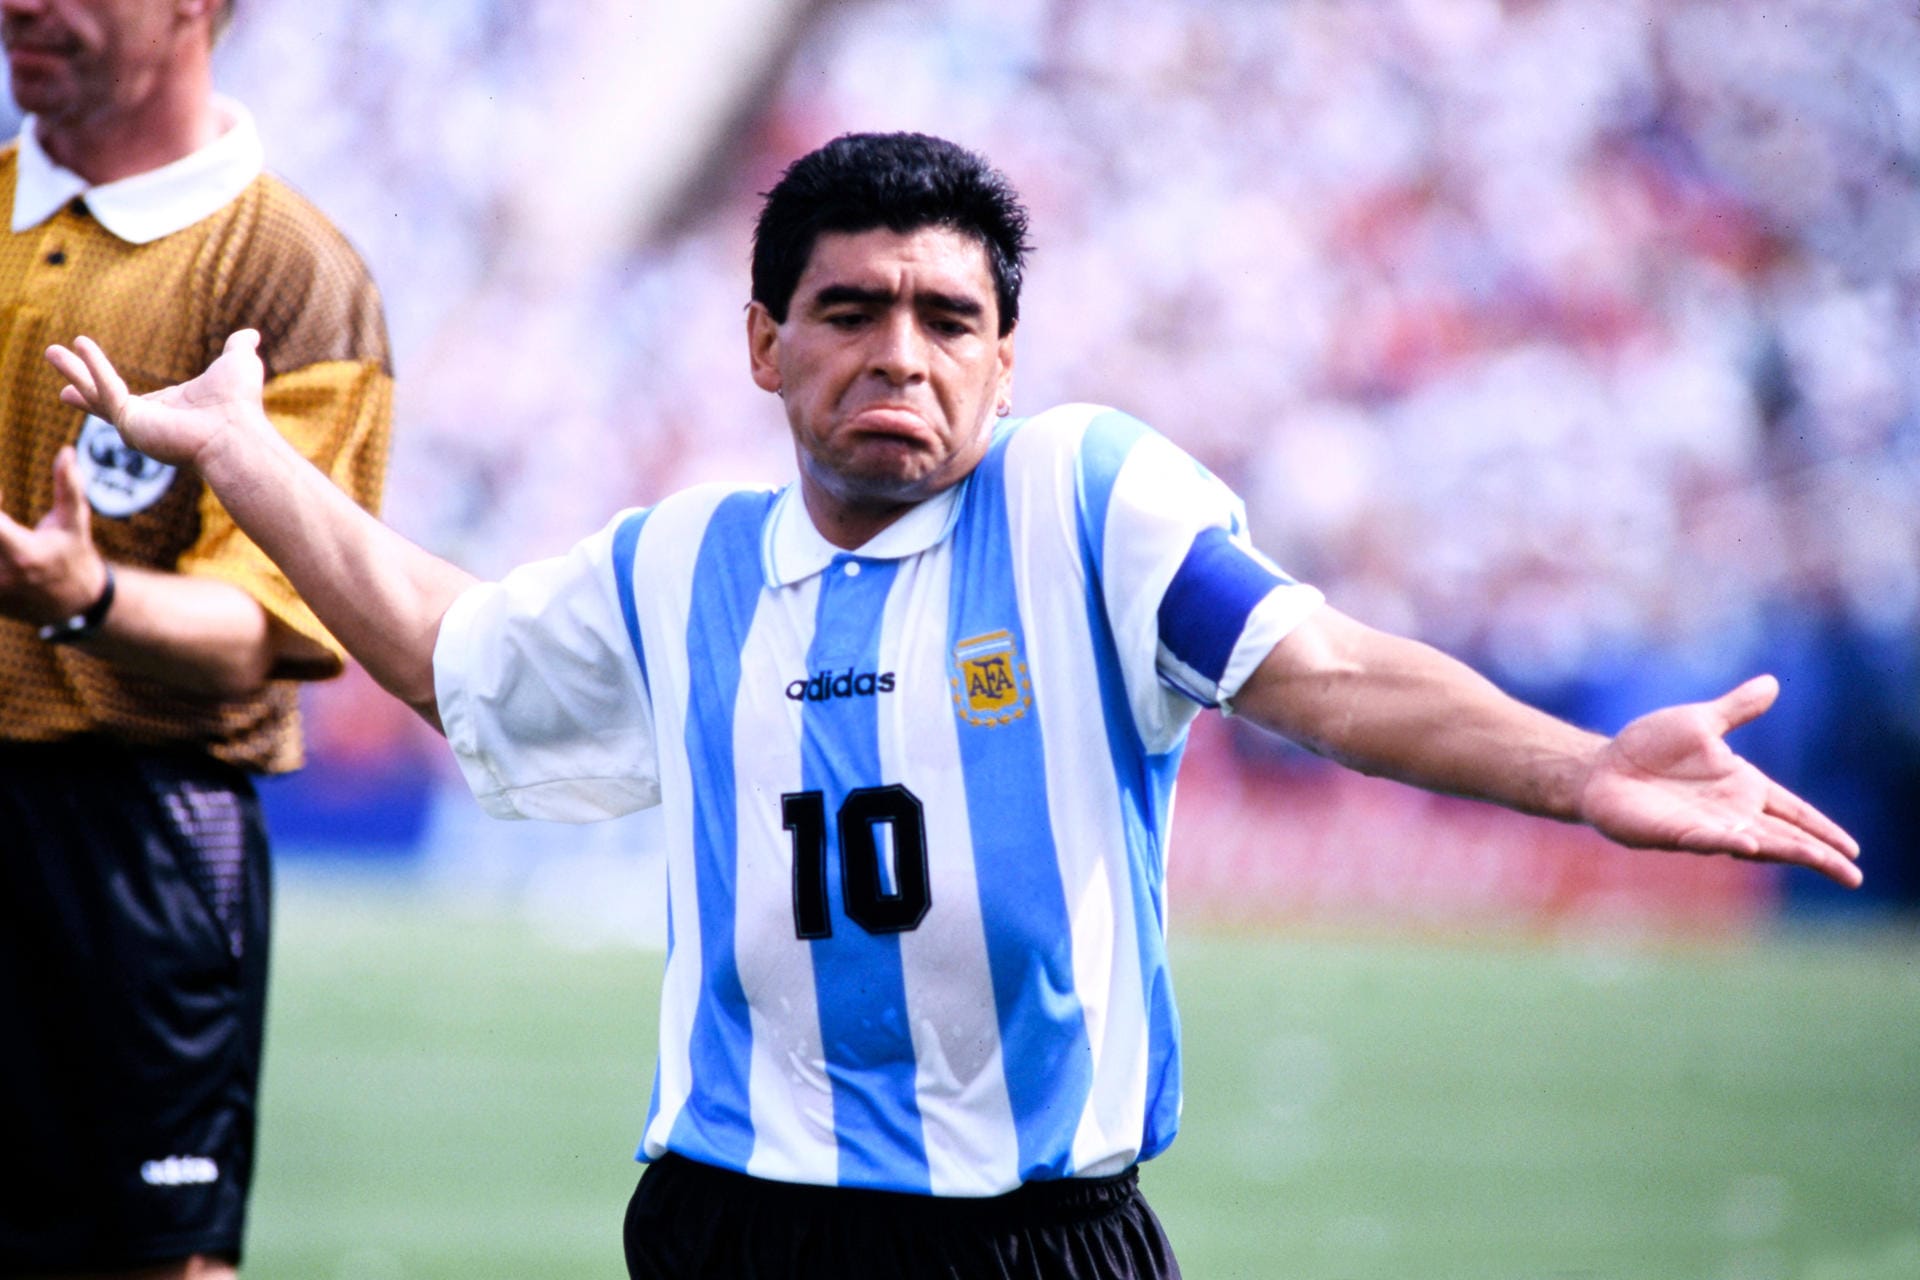 ... 15-monatige Sperre. Später ergibt eine Untersuchung, dass er die Substanzen (u. a. Appetitzüngler) nicht wissentlich eingenommen habe, sondern ihm diese von seinem Fitnesstrainer verabreicht worden seien. Unabhängig davon sorgte Maradona immer wieder mit Drogen- und Dopingproblemen für Schlagzeilen. Insgesamt war er in seiner Karriere 30 Monate lang gesperrt.